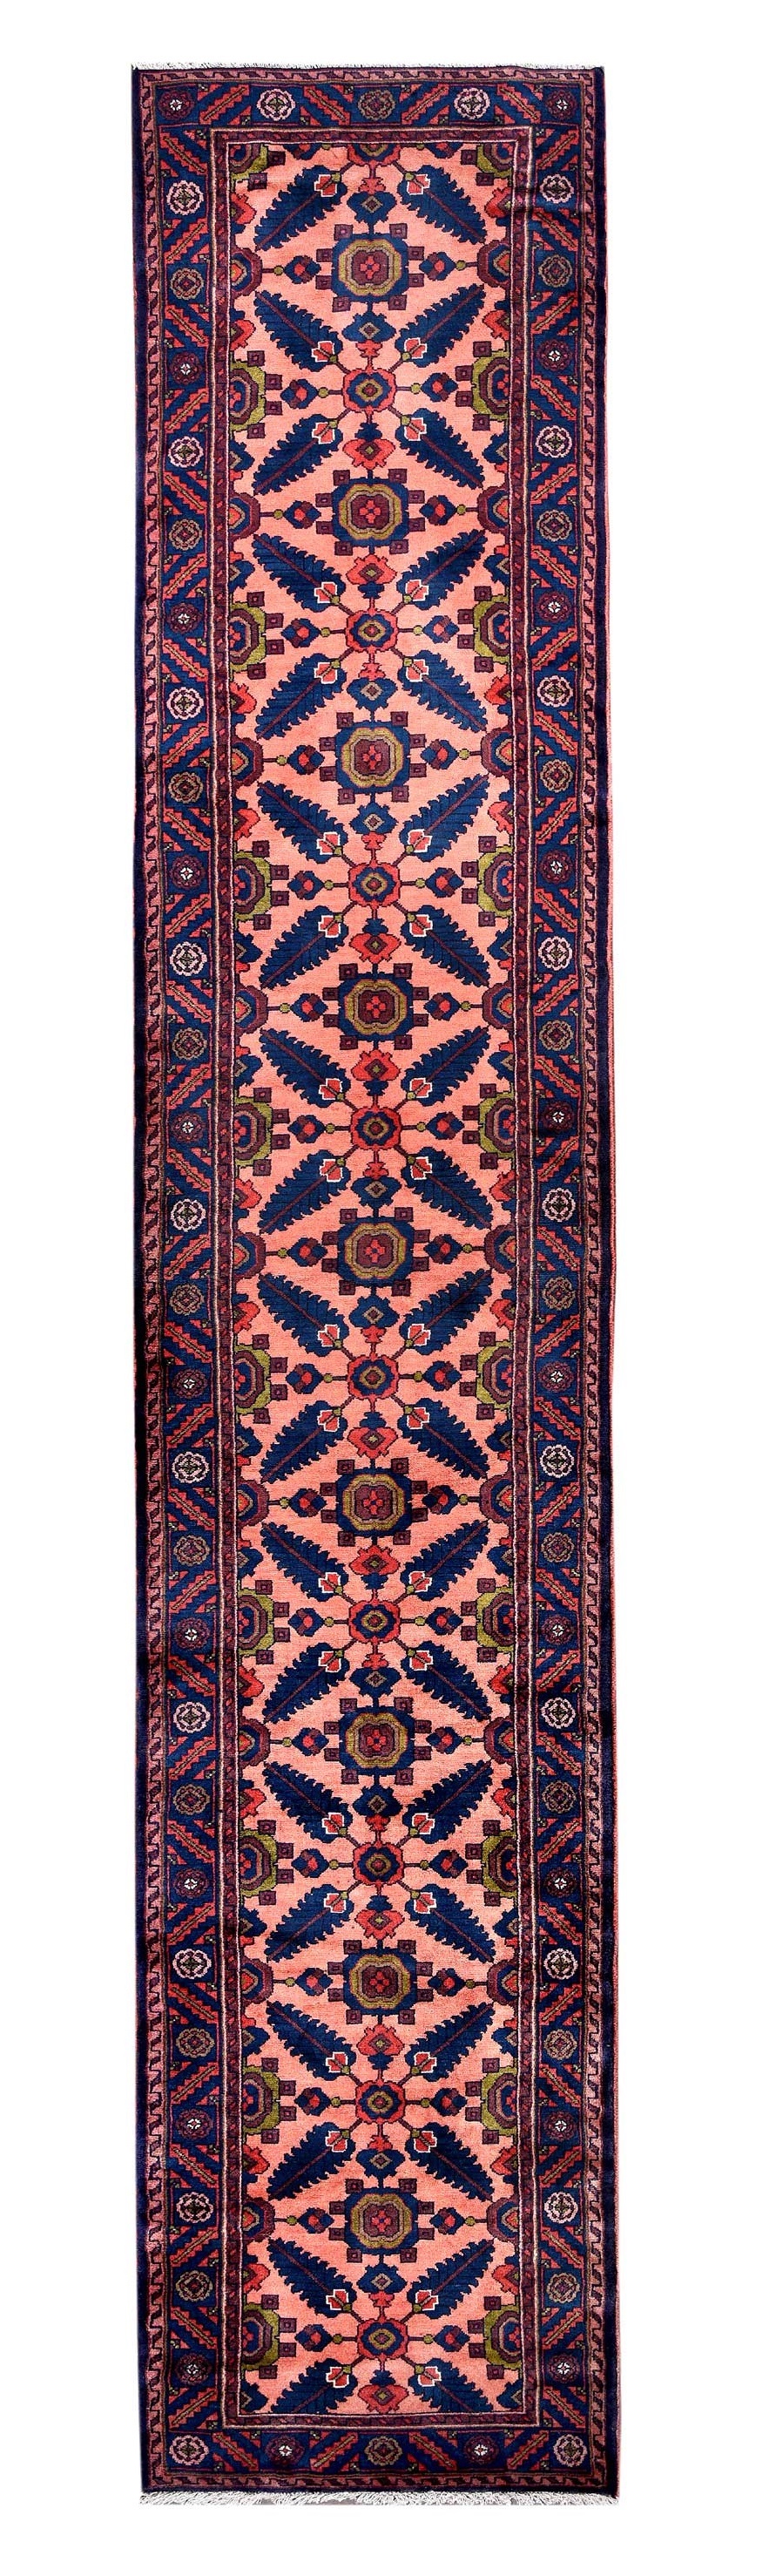 Handmade Persian Runner Carpet for sale DR-322 | CarpetShip